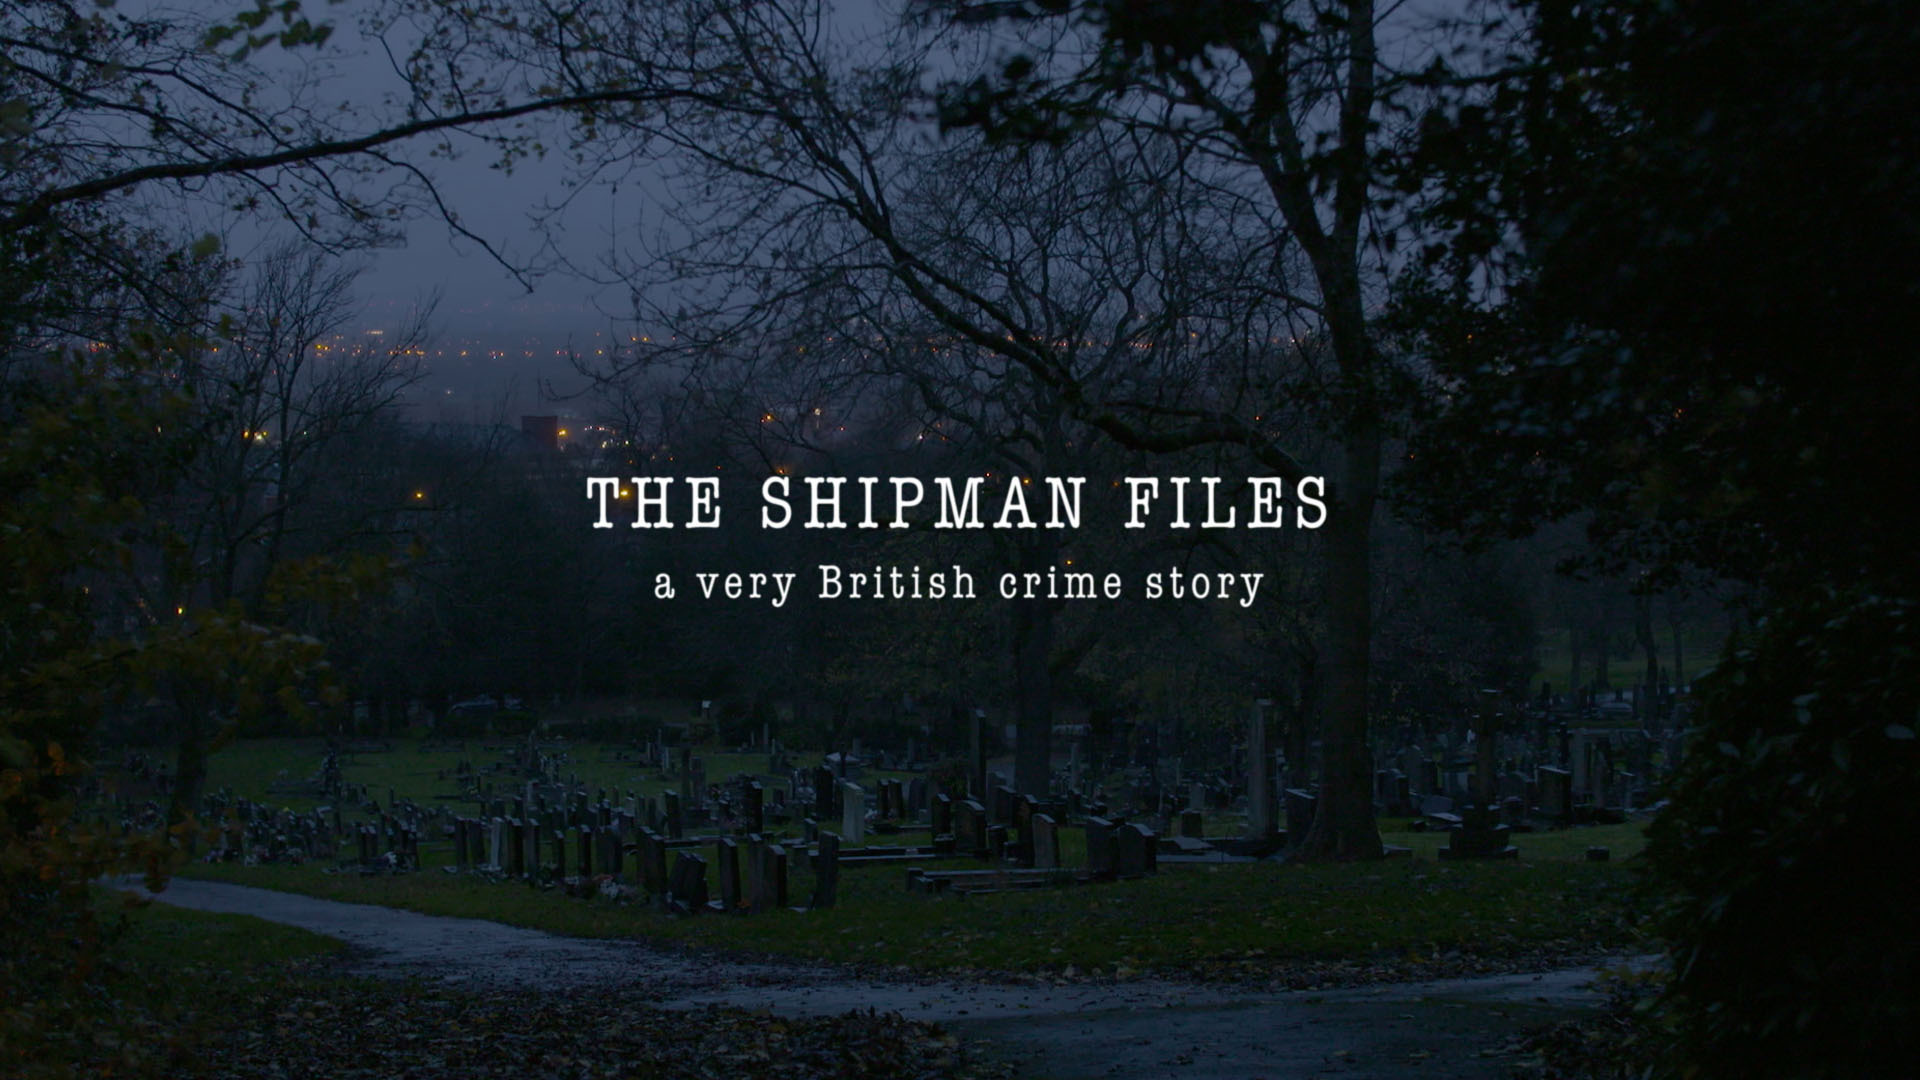 The Shipman Files